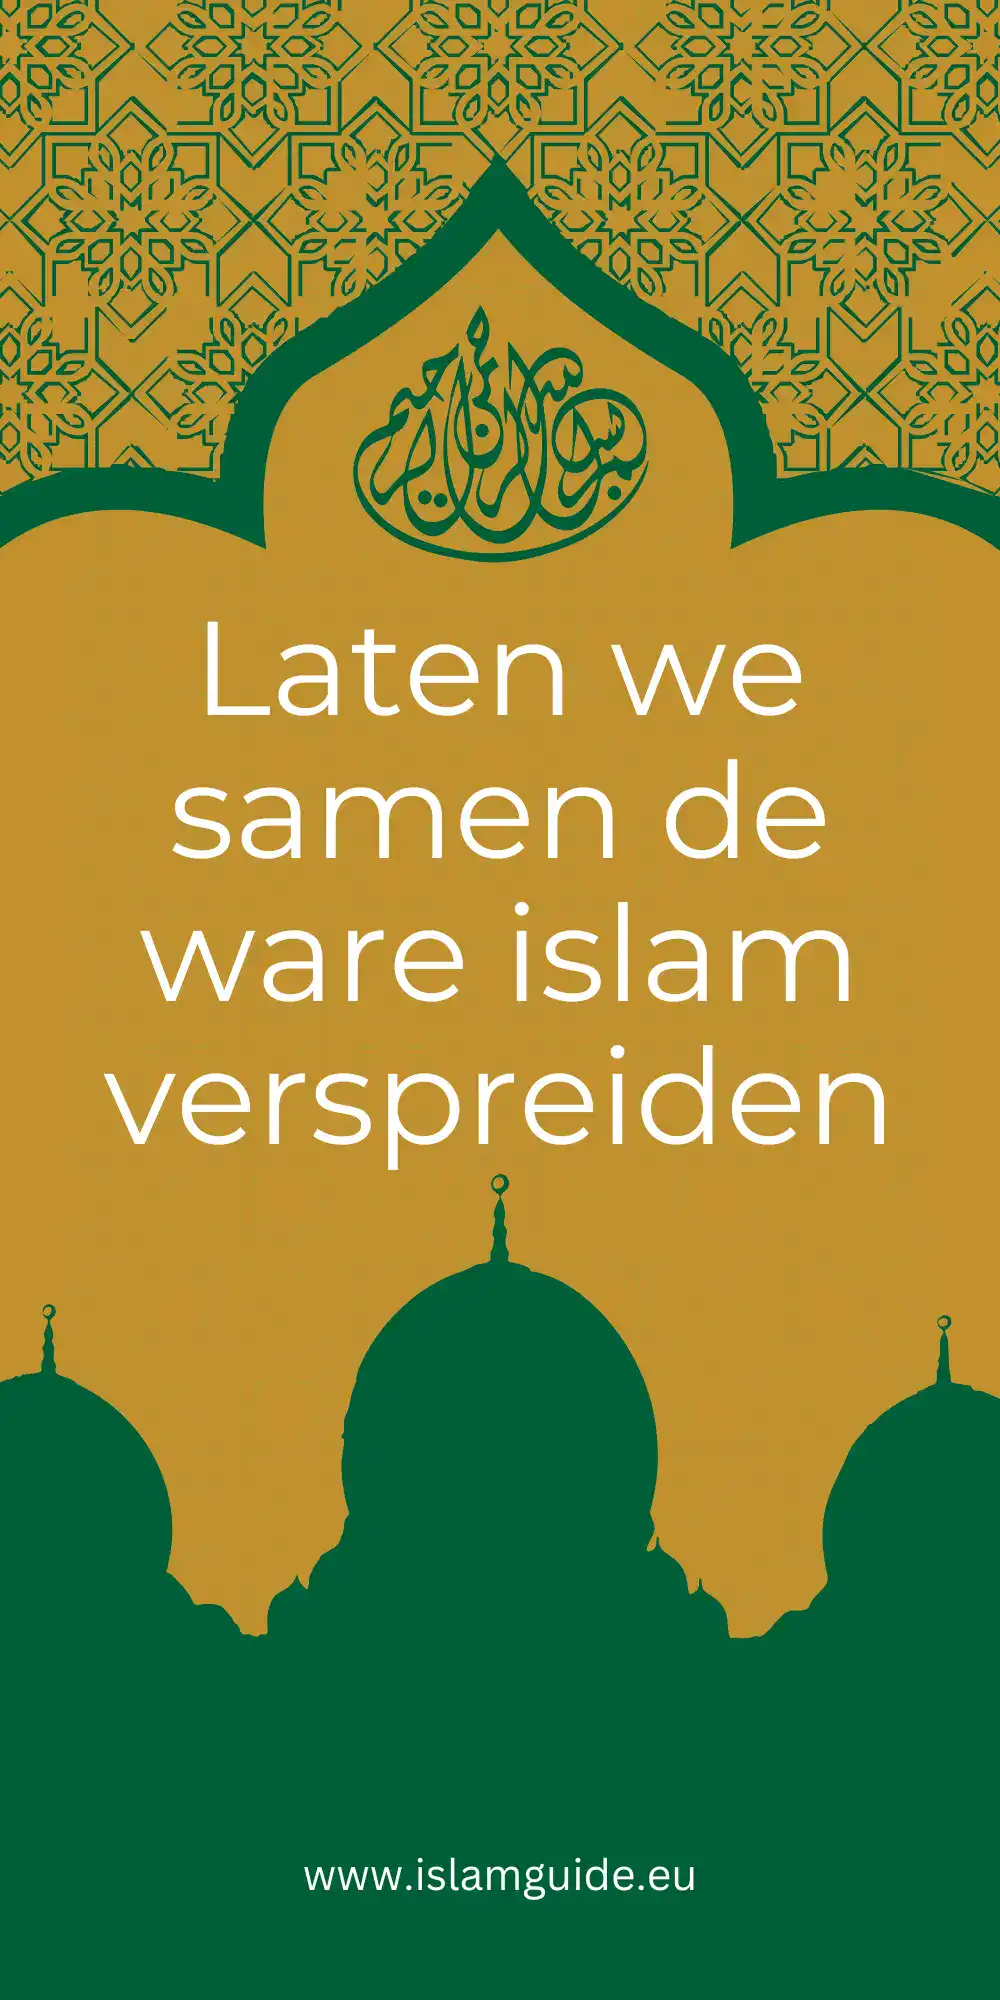 Afbeelding voor over ons: Hoe kunnen we leren en verspreiden Islam